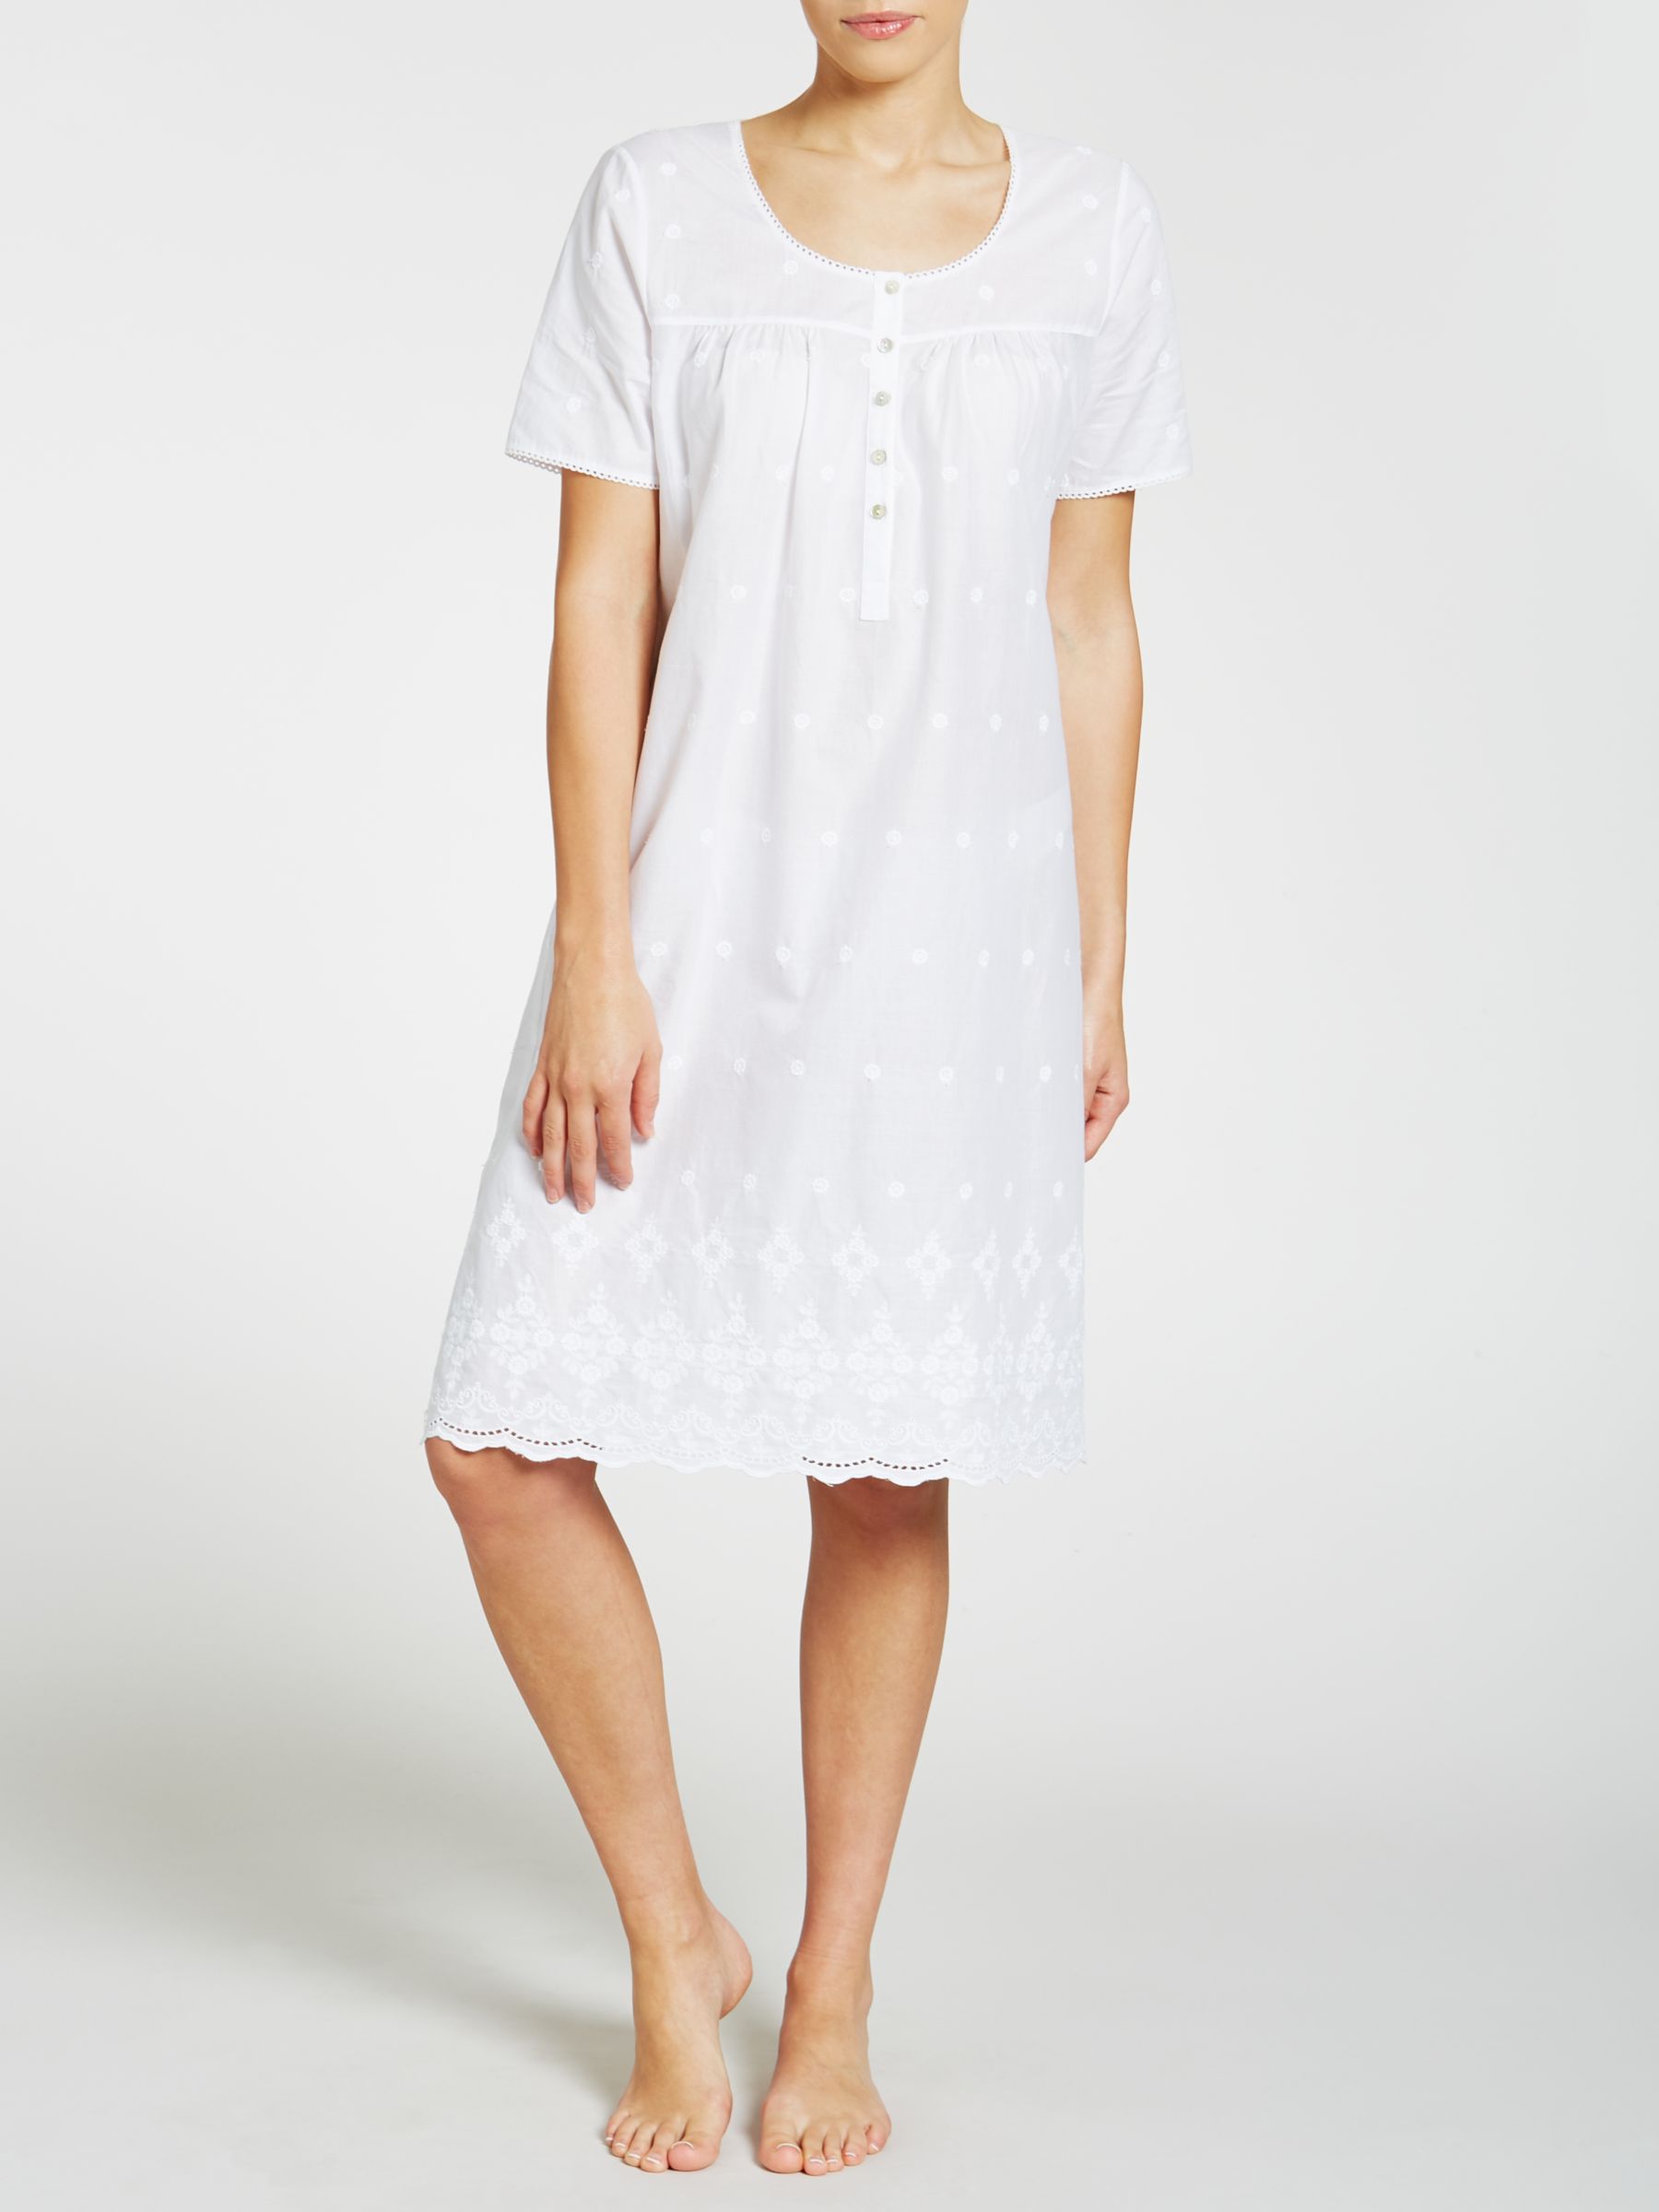 beyonce white grammy dress